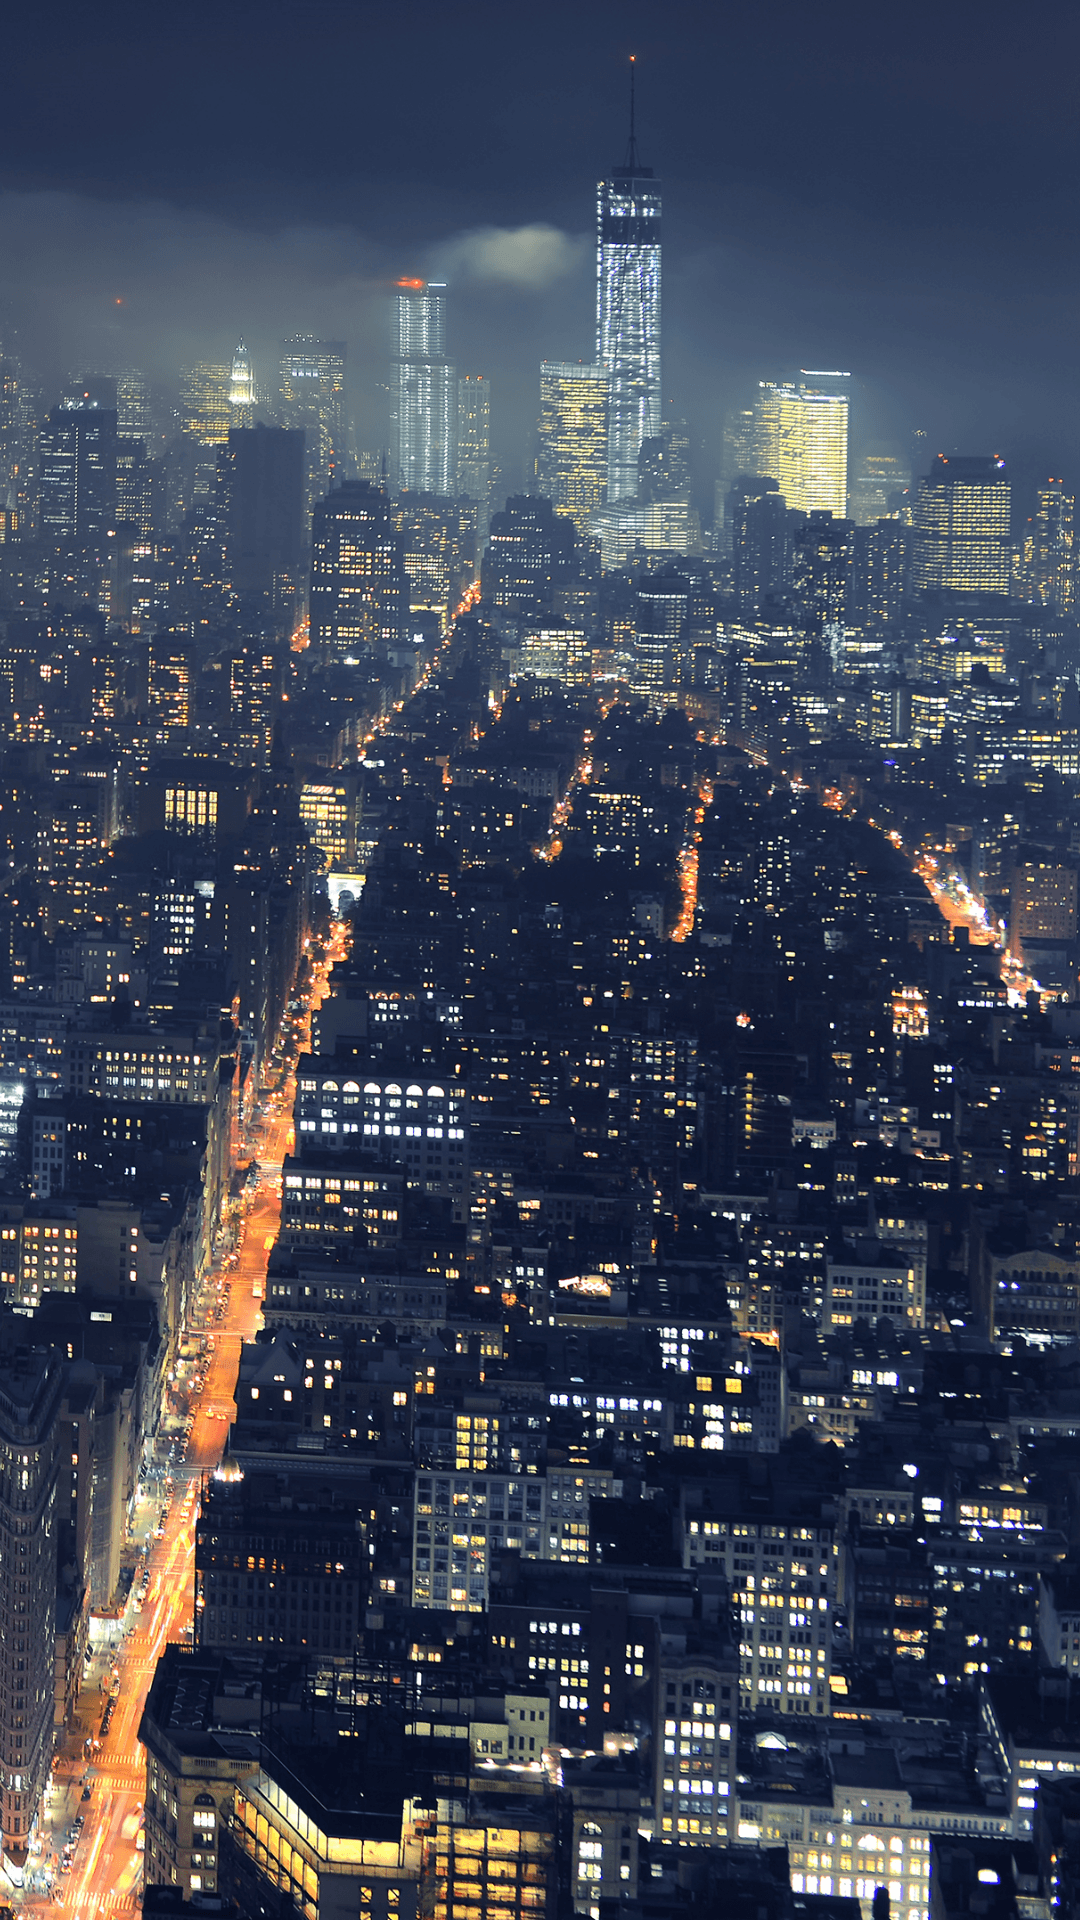 City at night wallpaper. Wallpaper Sazum. City wallpaper